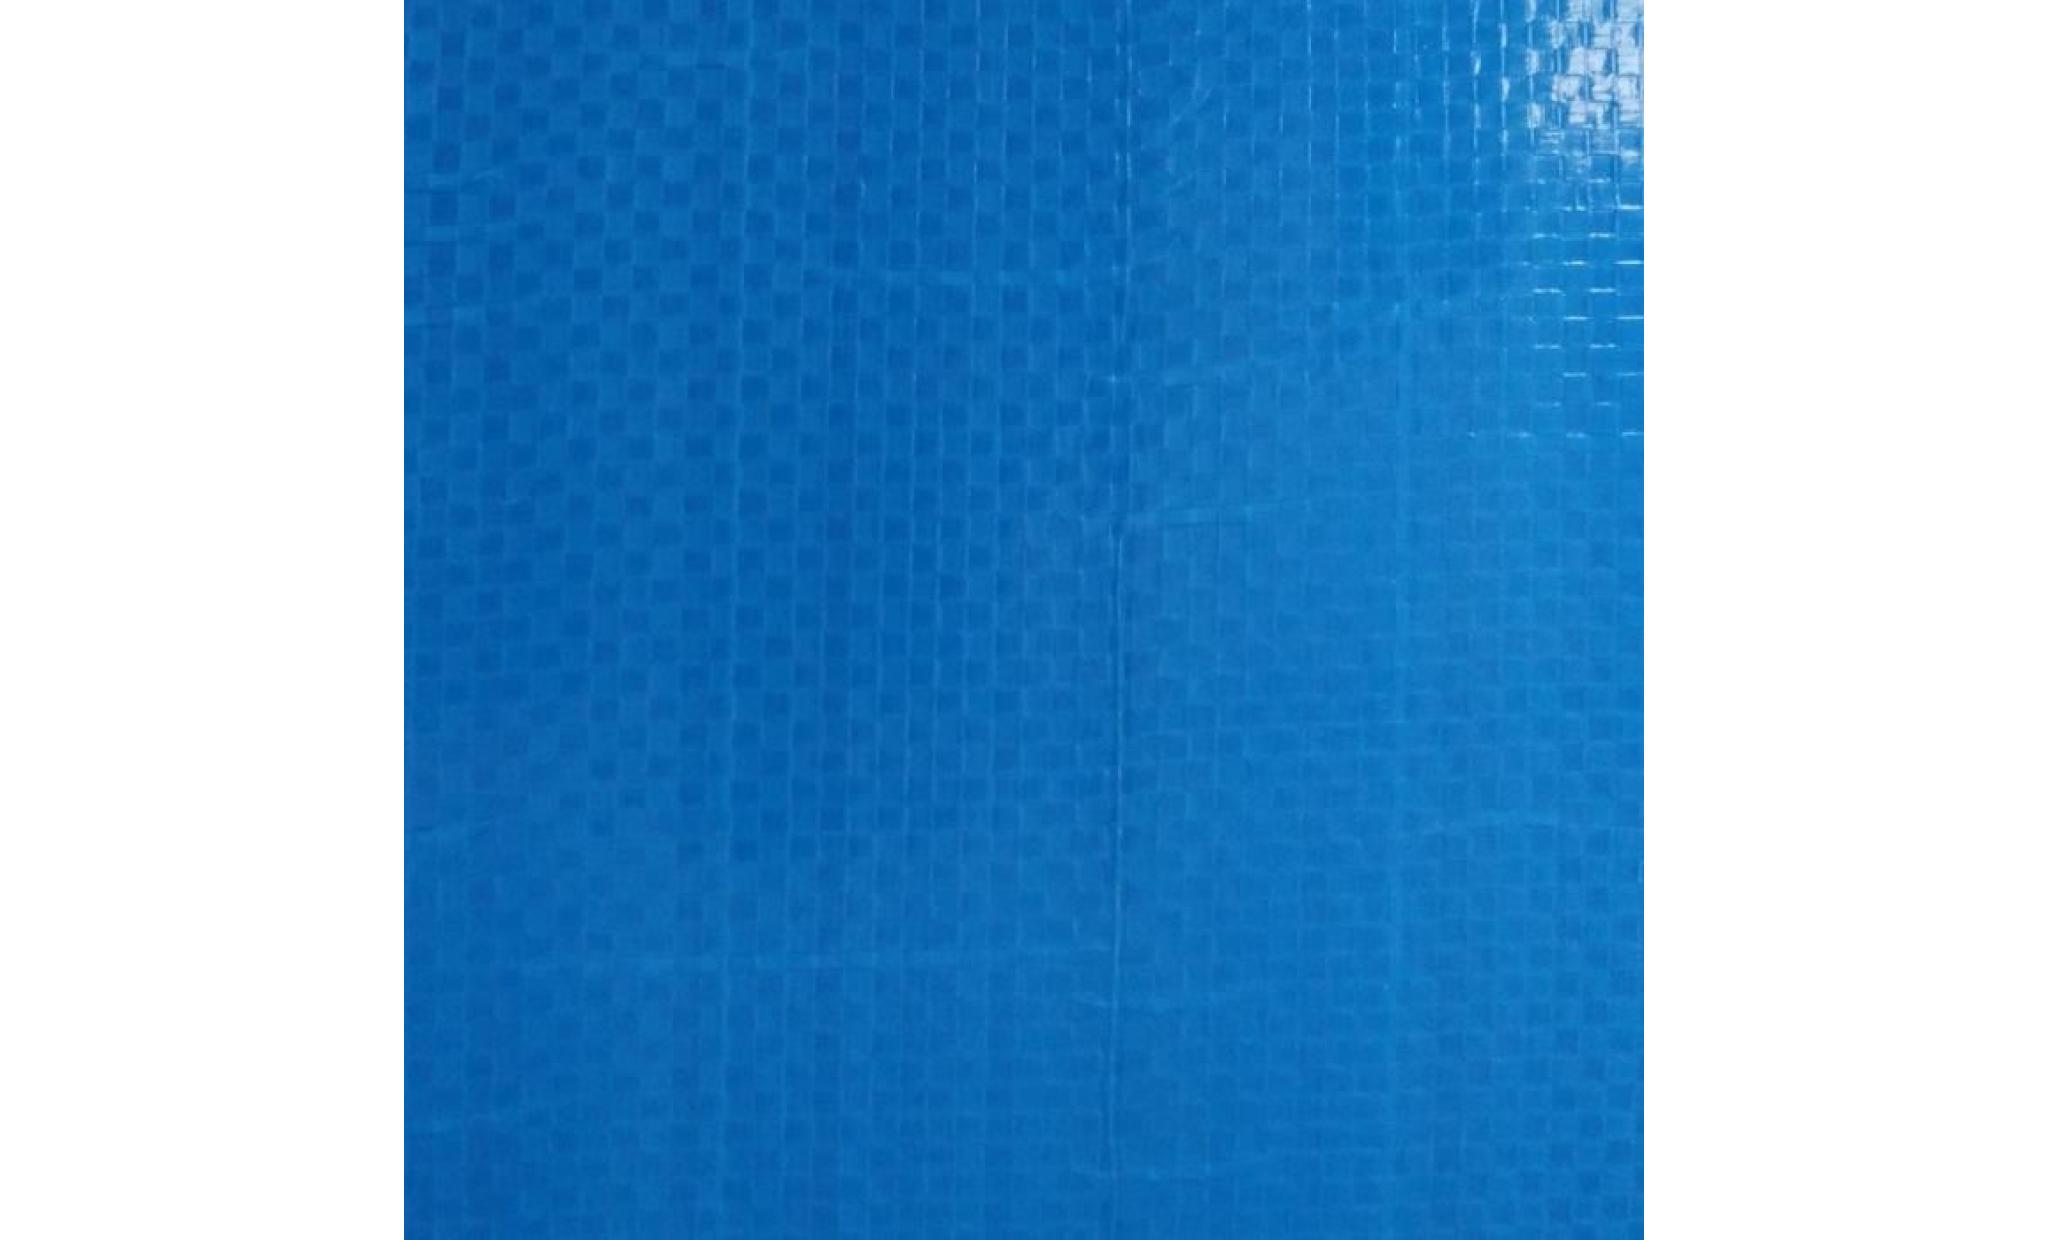 tempsa bache couverture ronde pour piscine jardin(sans piscine ) bleu ou noir (couleur aléatoire) 366cm pas cher